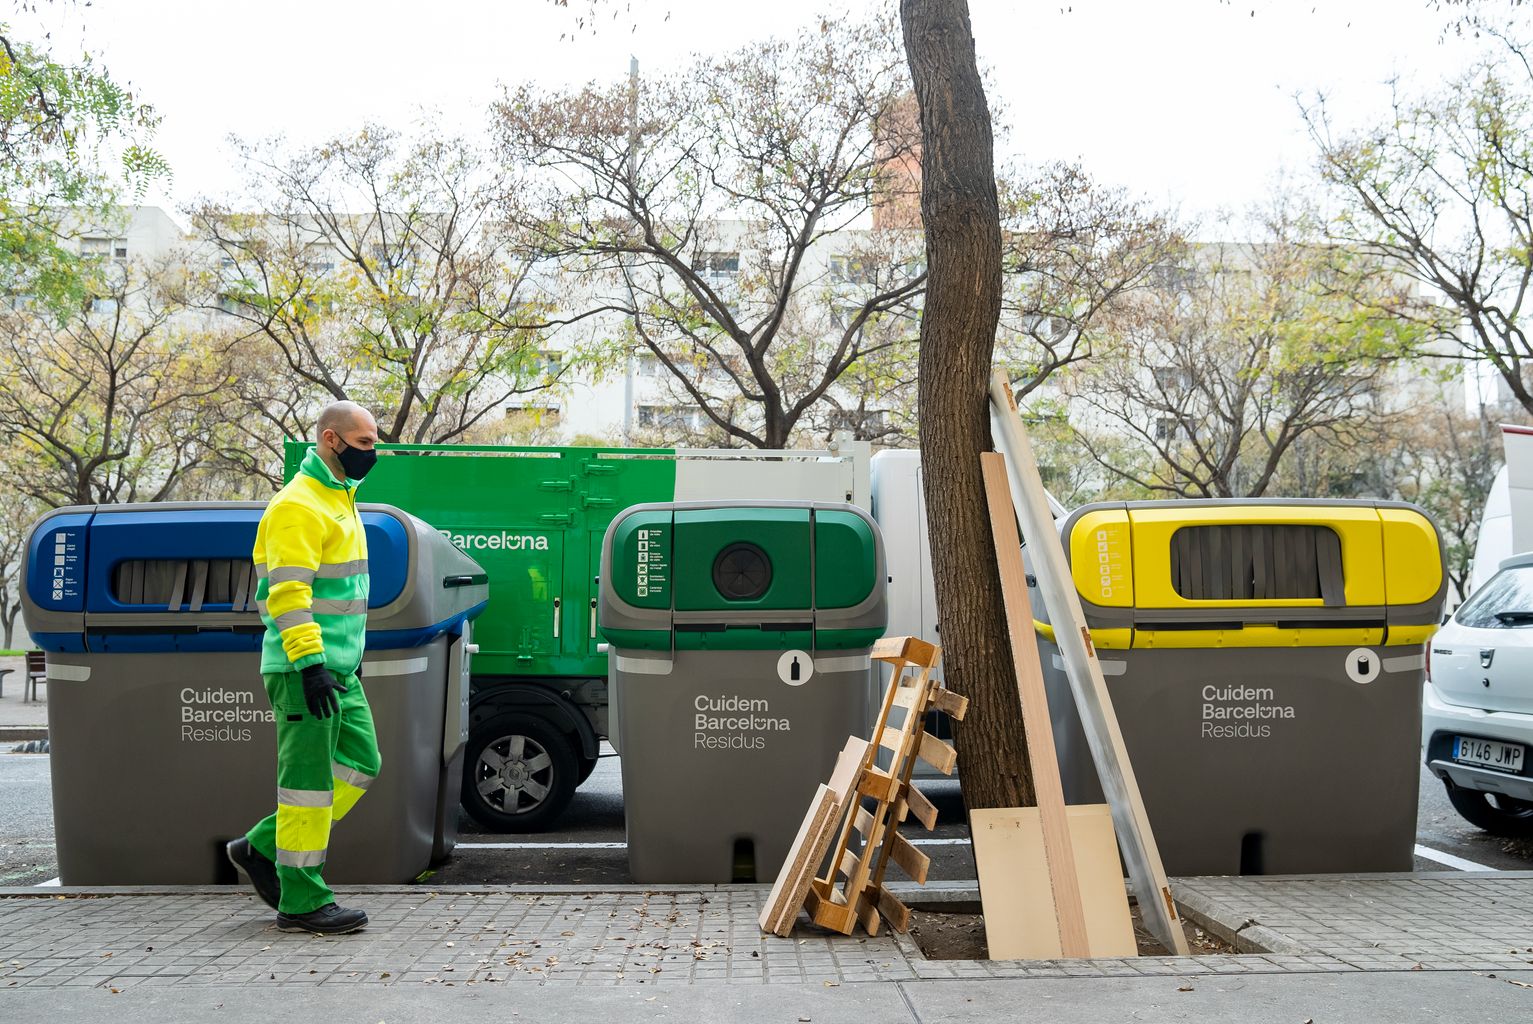 Un trabajador del servicio de limpieza (Cuidem Barcelona Residus) se acerca a recoger unas maderas y muebles abandonados en el alcorque de un árbol junto a unos contenedores de reciclaje